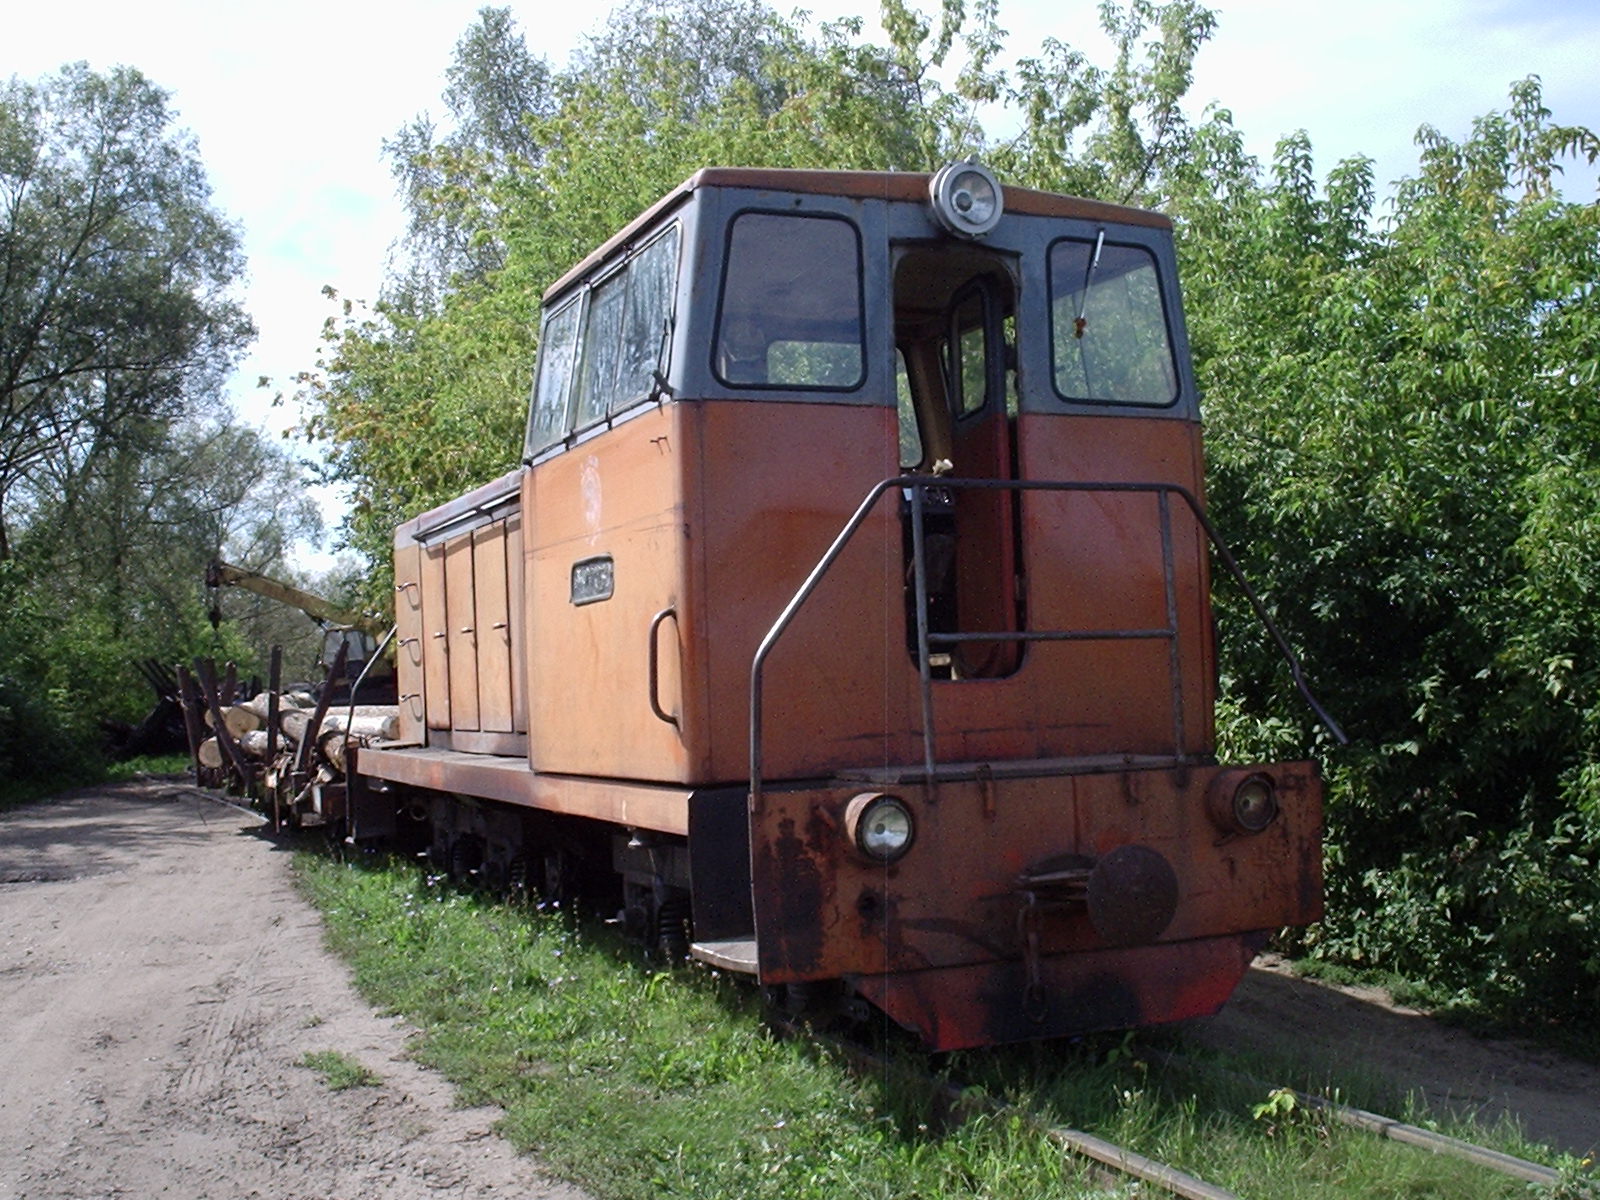 Узкоколейная железная дорога спичечной фабрики «Победа» (село Верхний Ломов) — фотографии, сделанные в 2006 году (часть 1)